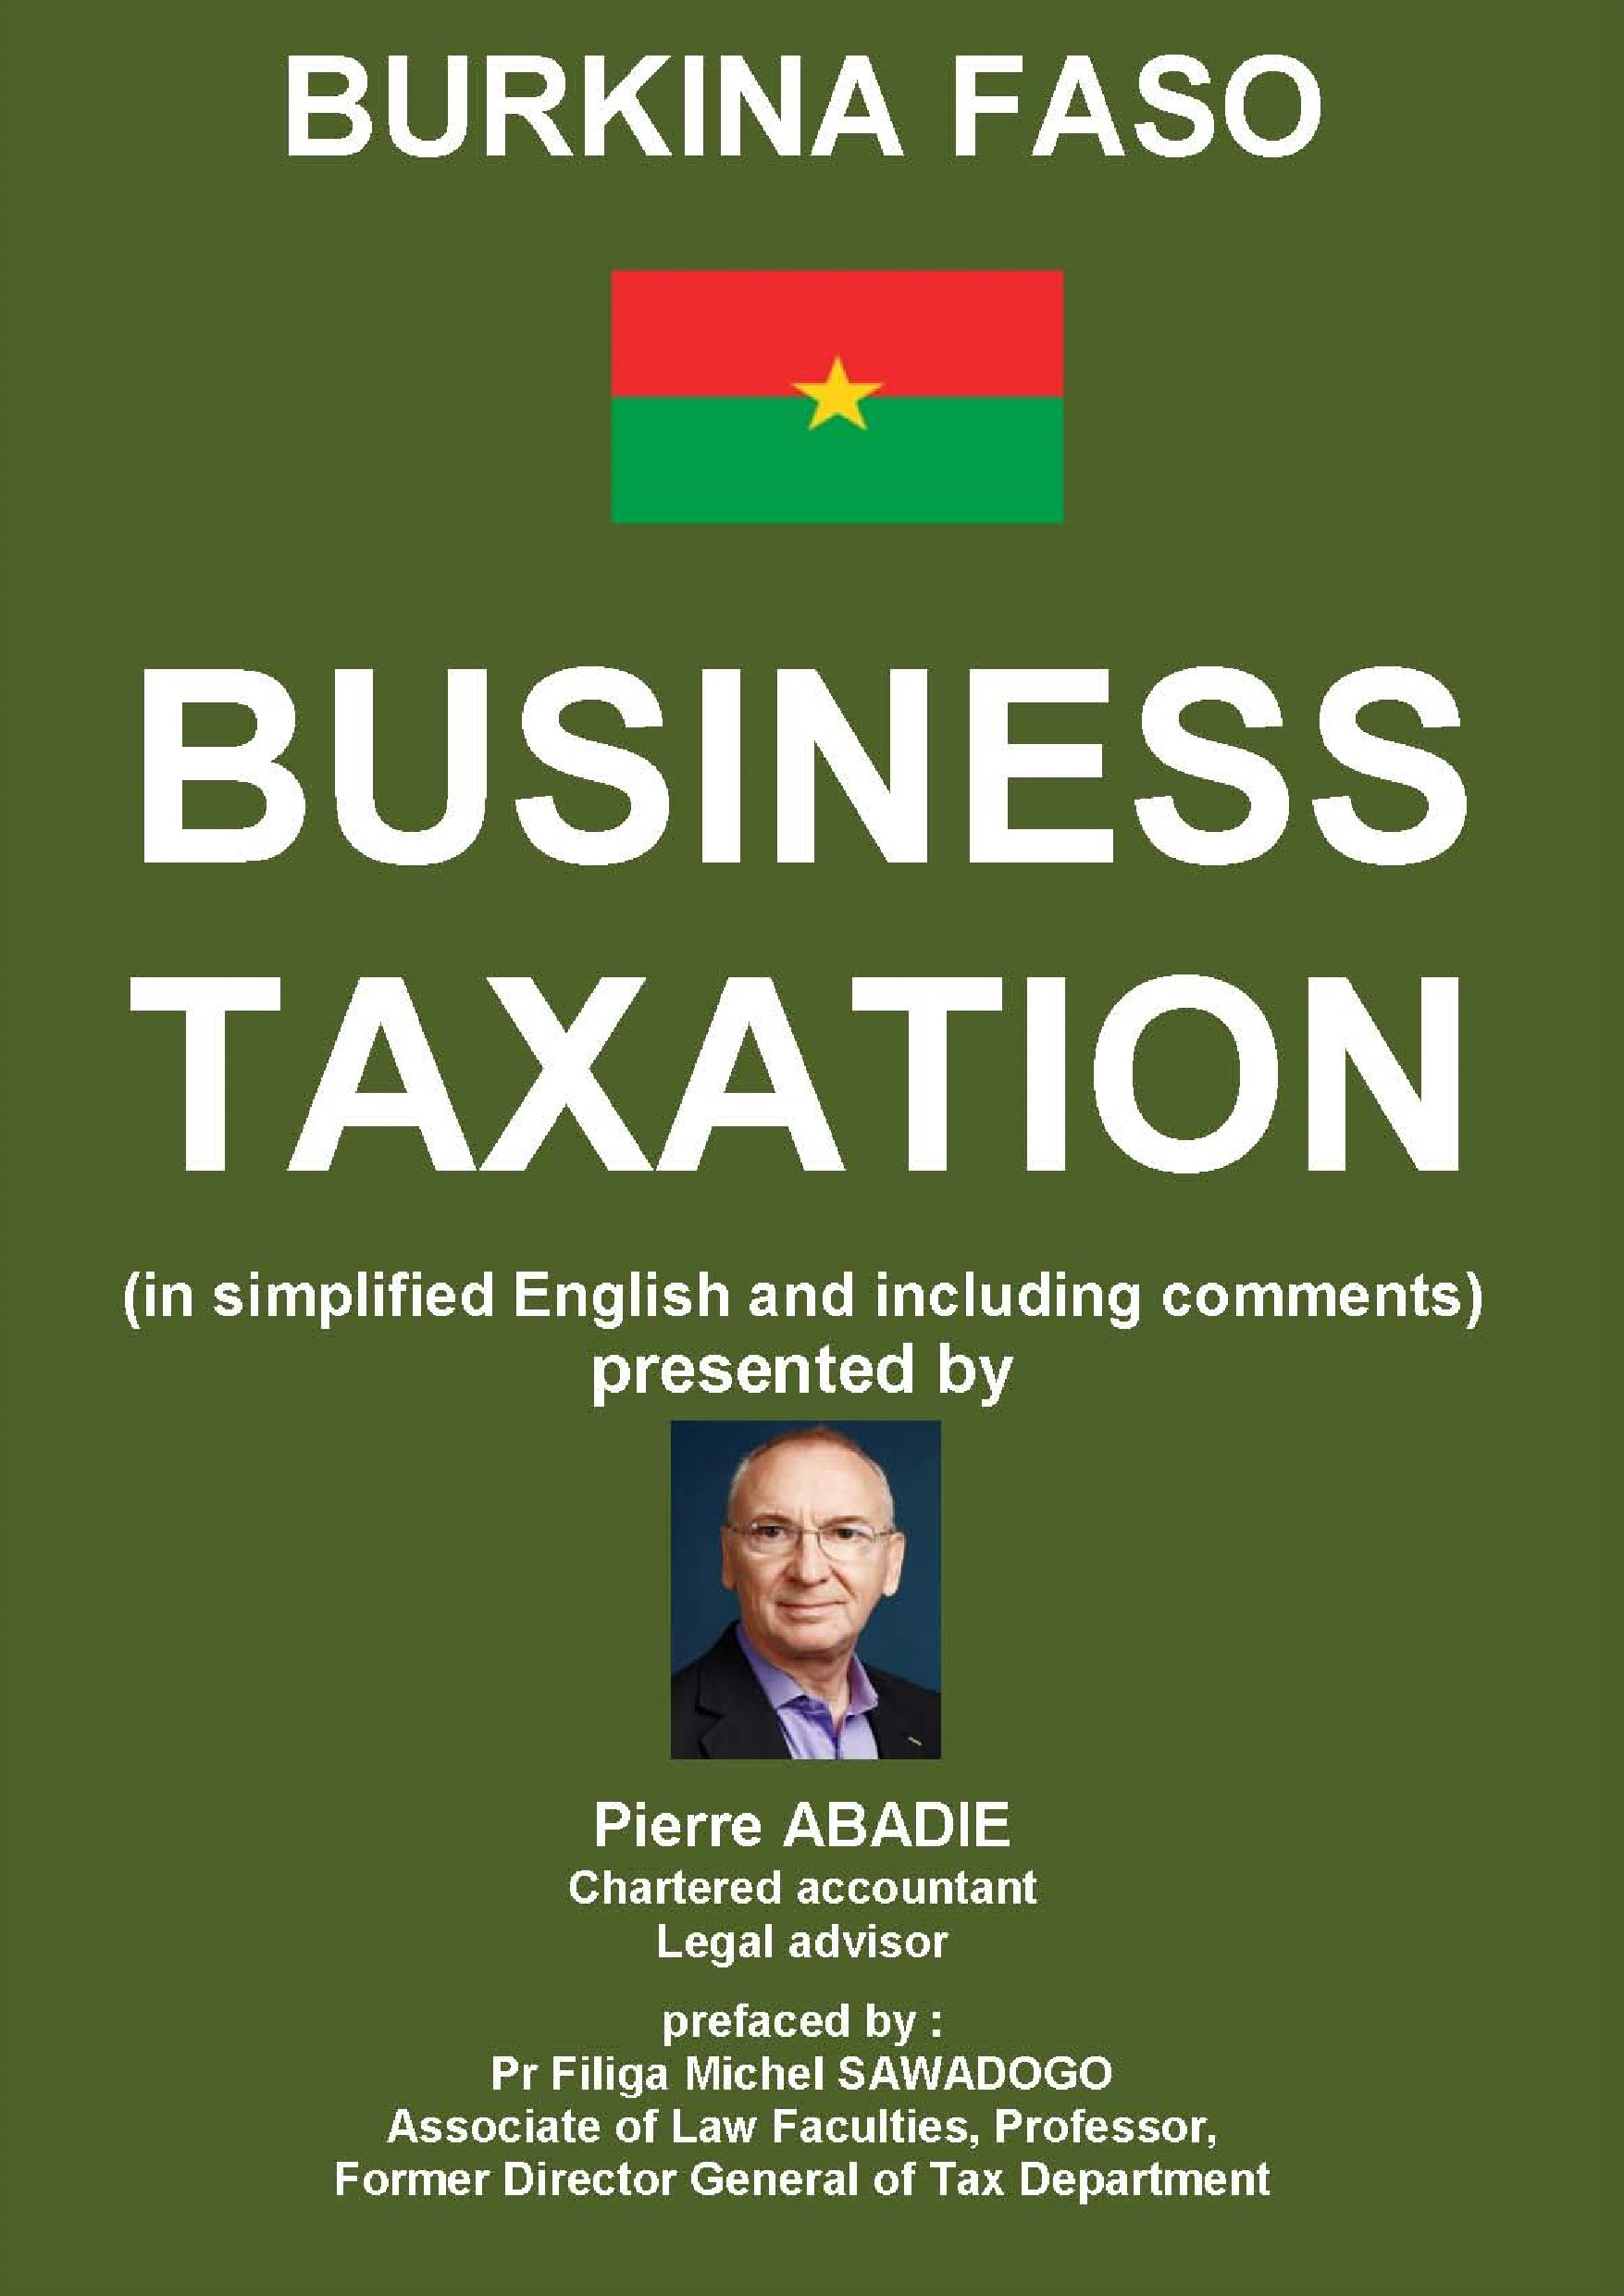 Business Taxation in Burkina Faso 2017